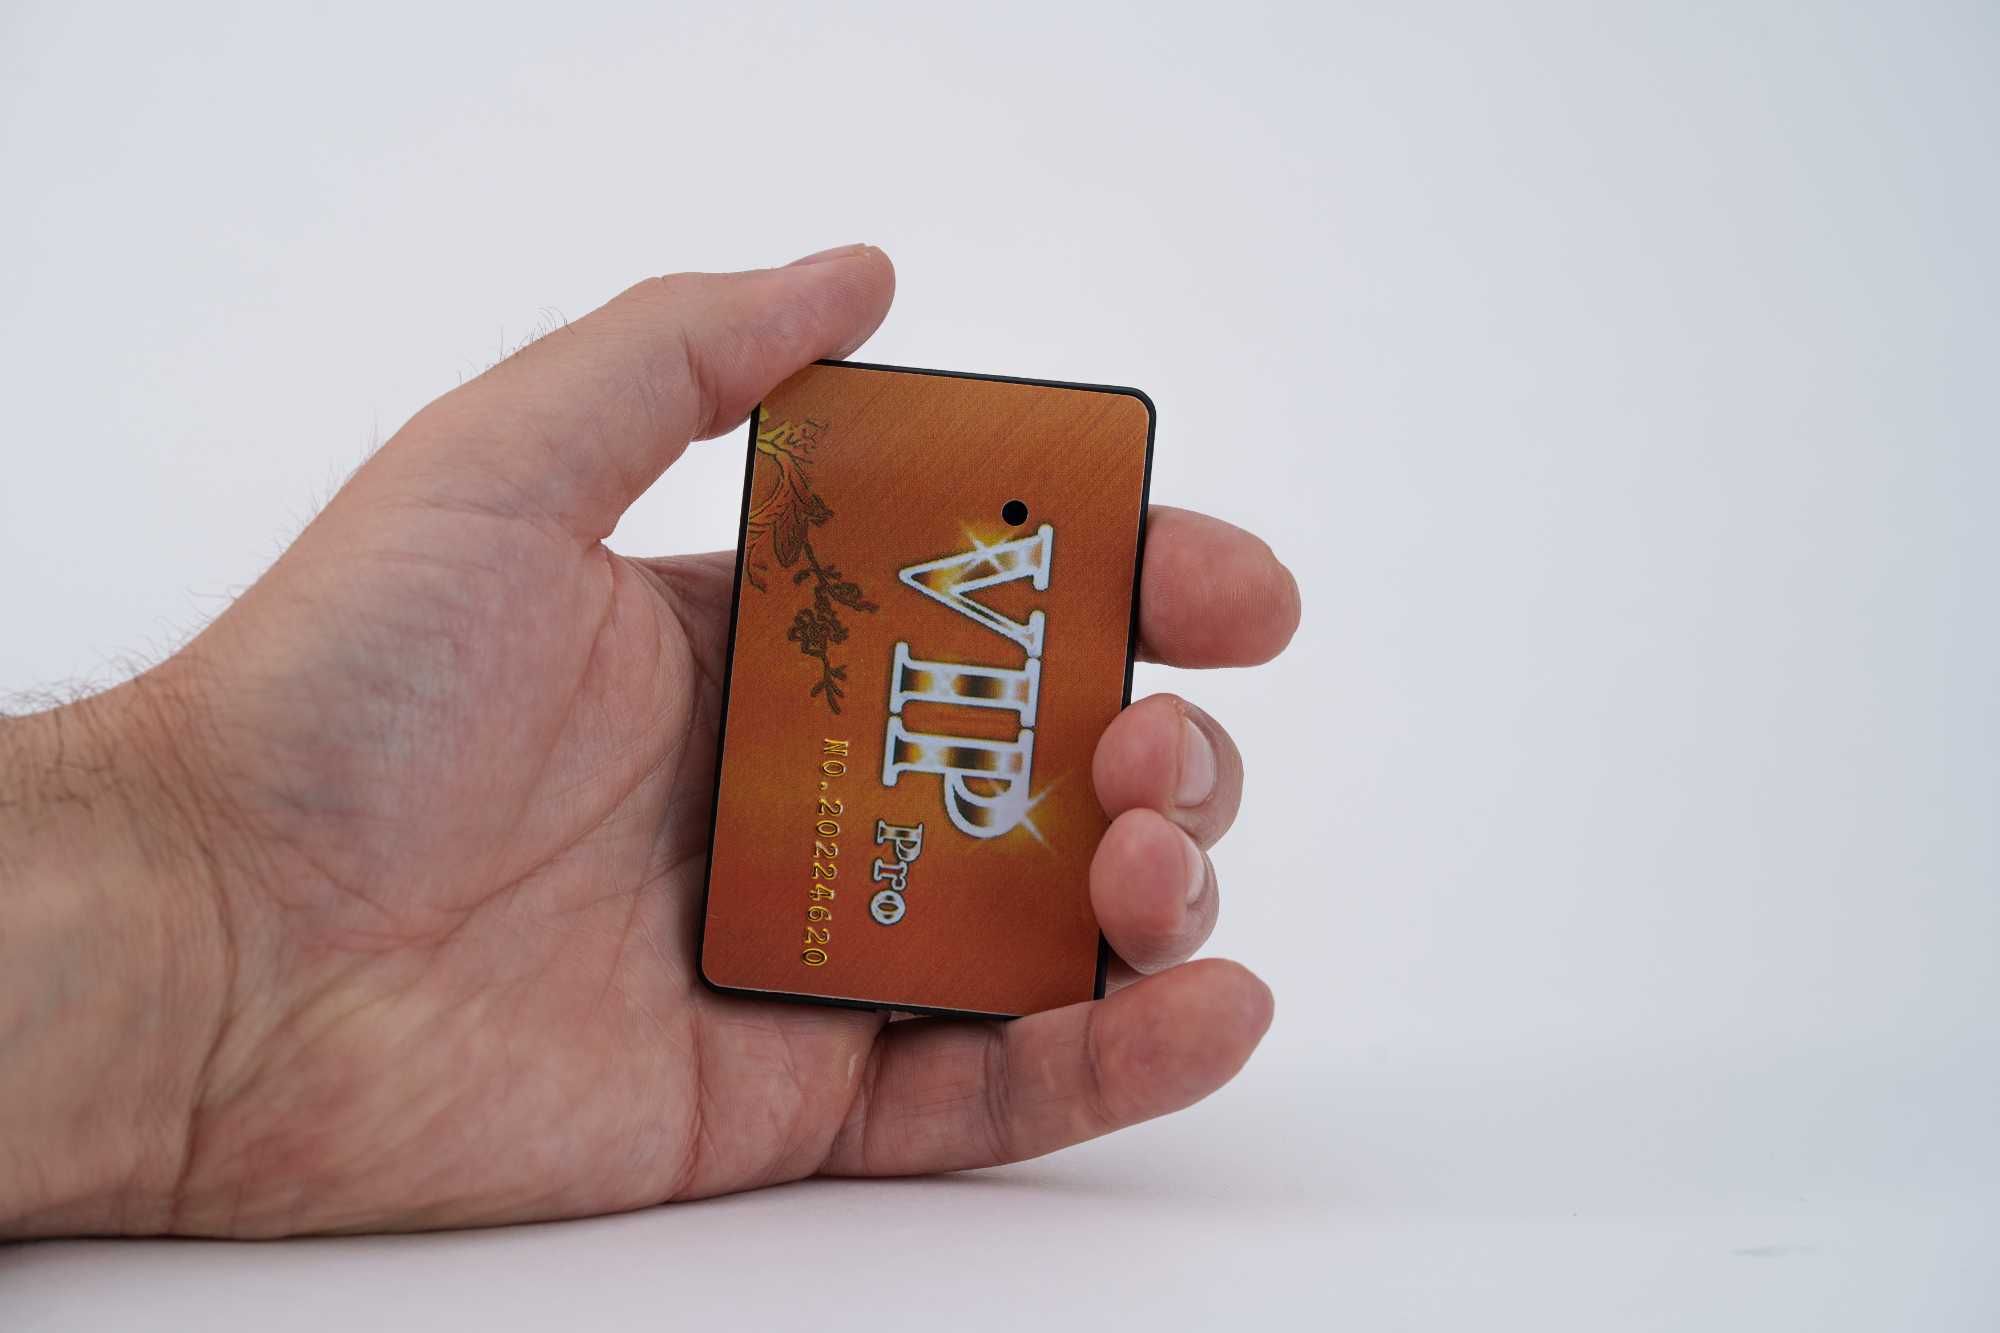 Card GSM + Casca de Copiat BONUS 3xBaterii 337 +SIM Card Casca Copiat